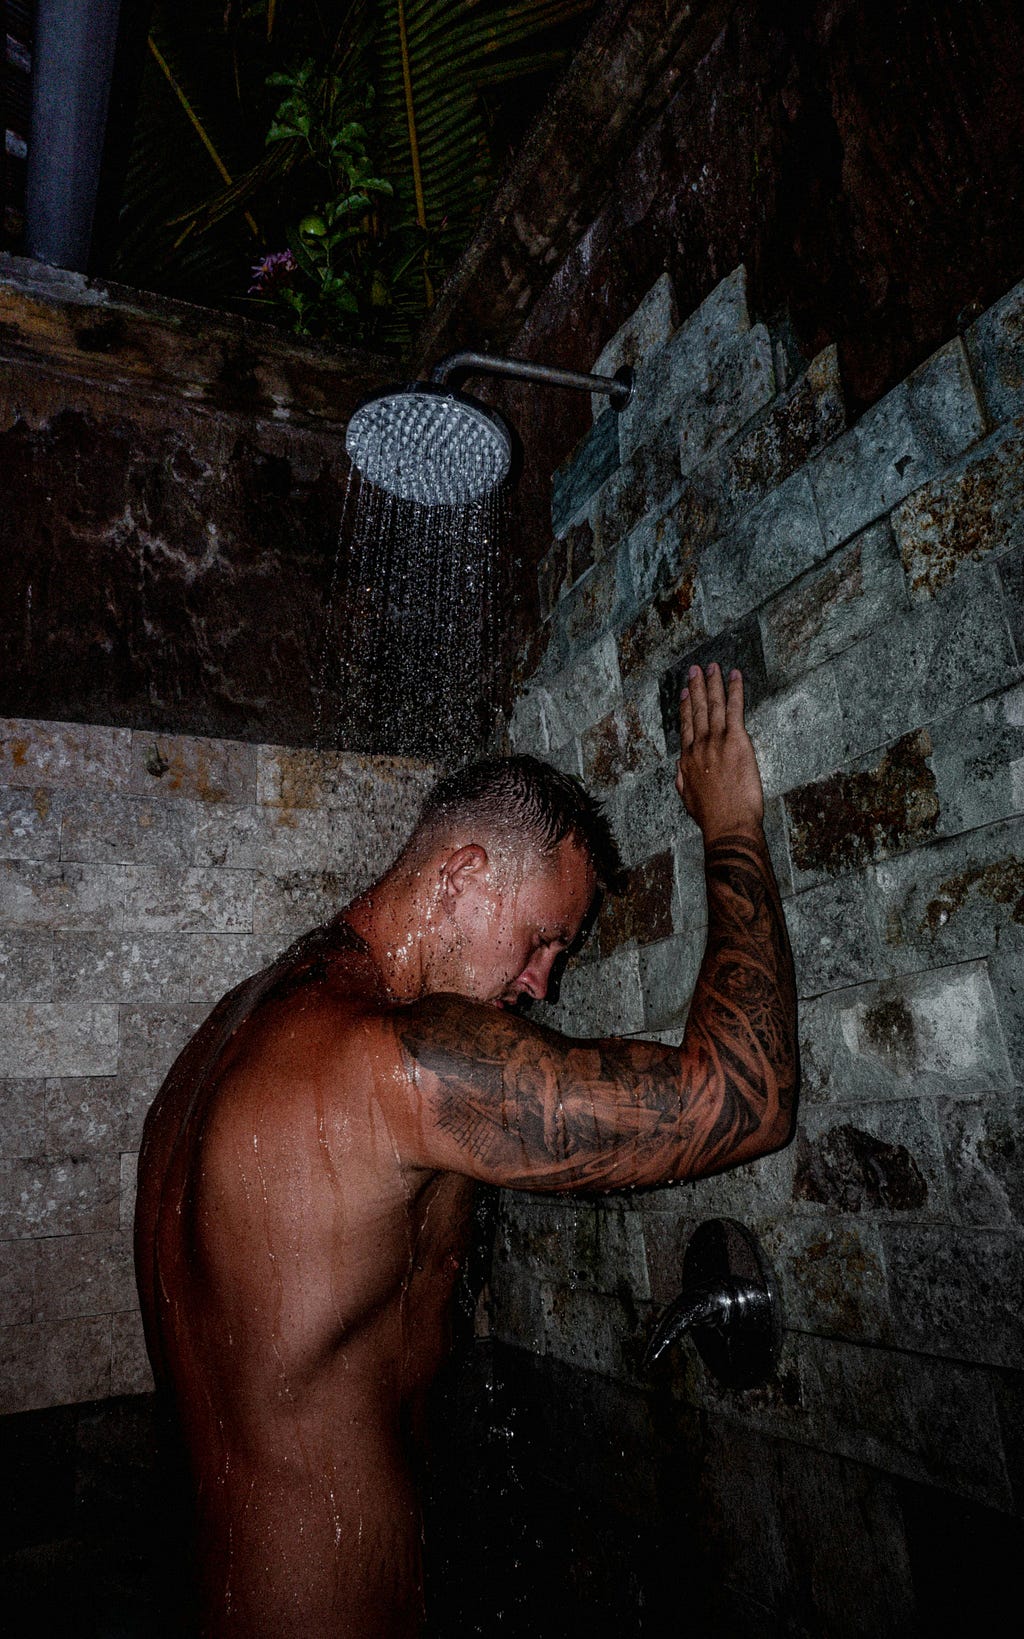 Naked man showering